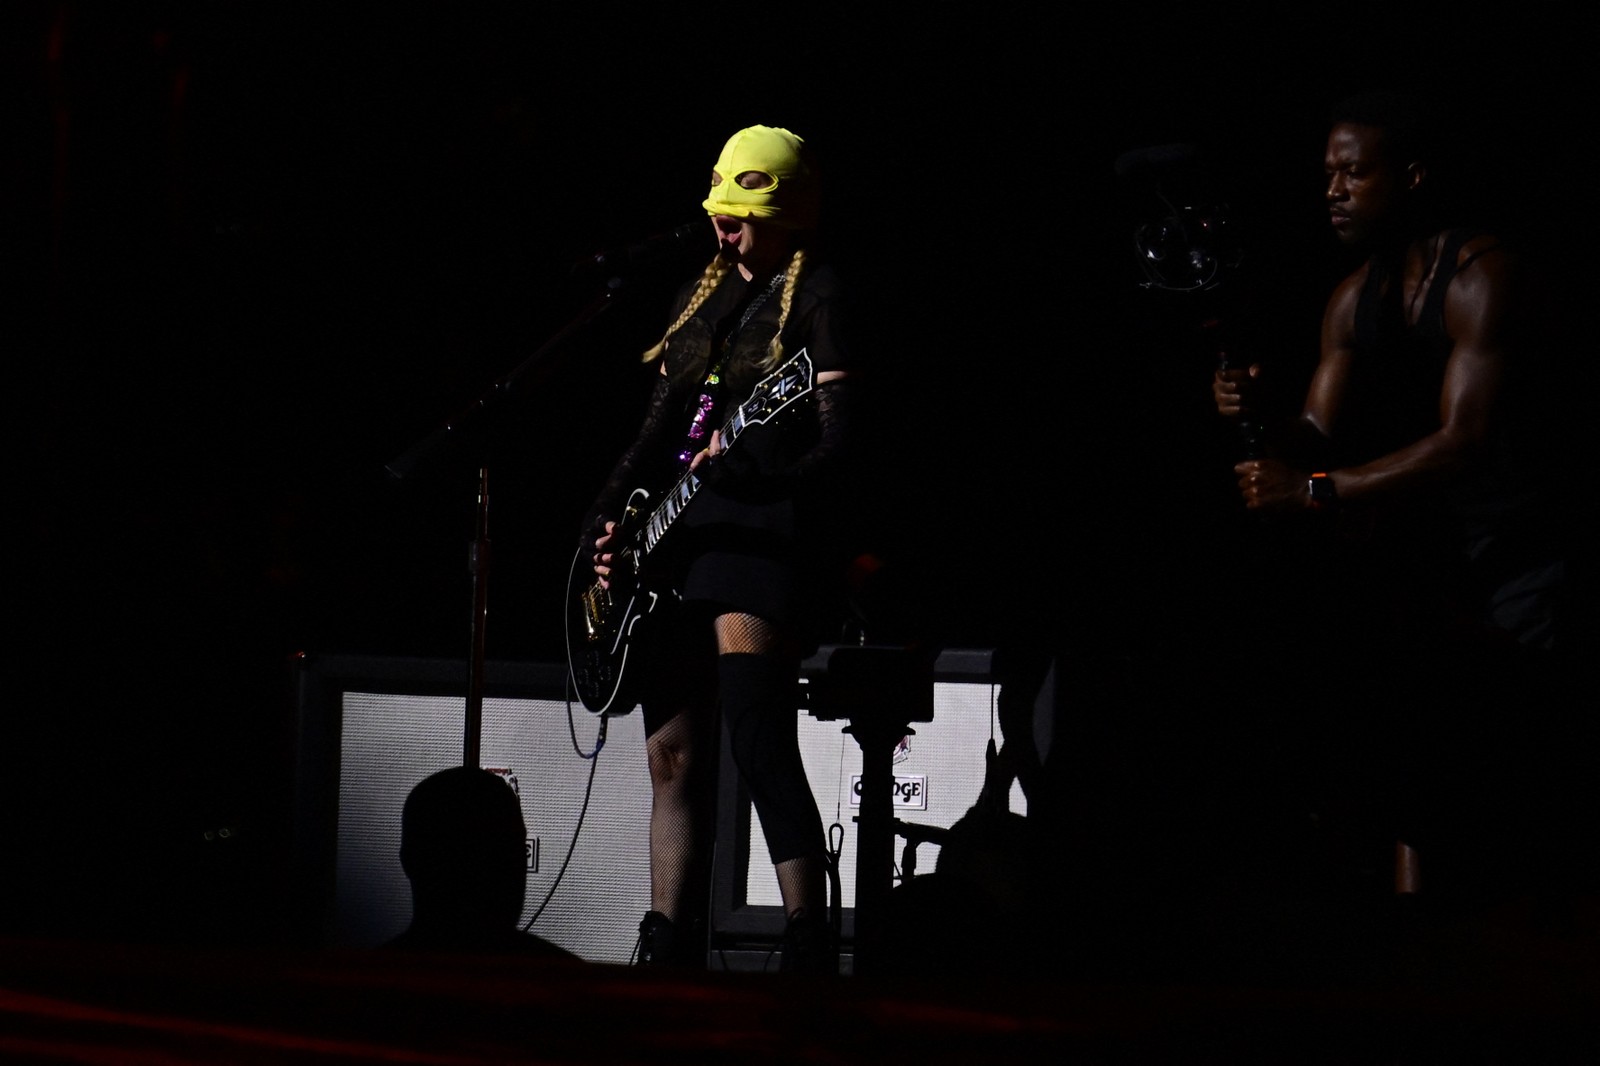 Madonna ensaia no palco na praia de Copacabana, no Rio de Janeiro. A cantora entoou alguns sucessos como "Nothing Really Matters", "Live to tell", "La isla bonita". — Foto:  Pablo PORCIUNCULA/AFP